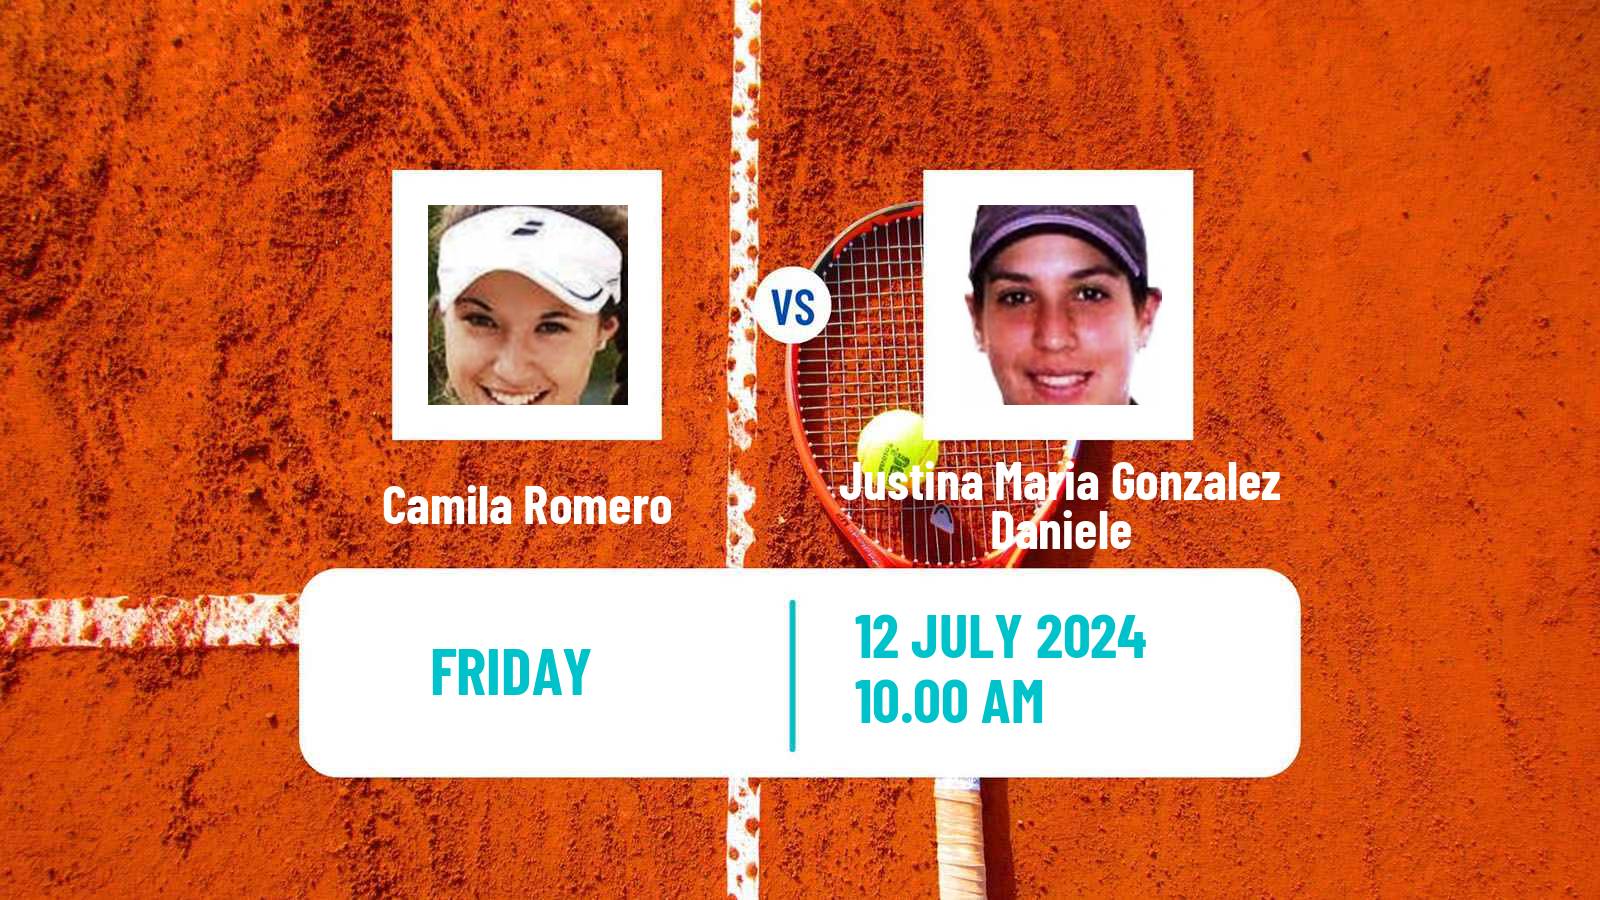 Tennis ITF W15 Lujan Women Camila Romero - Justina Maria Gonzalez Daniele